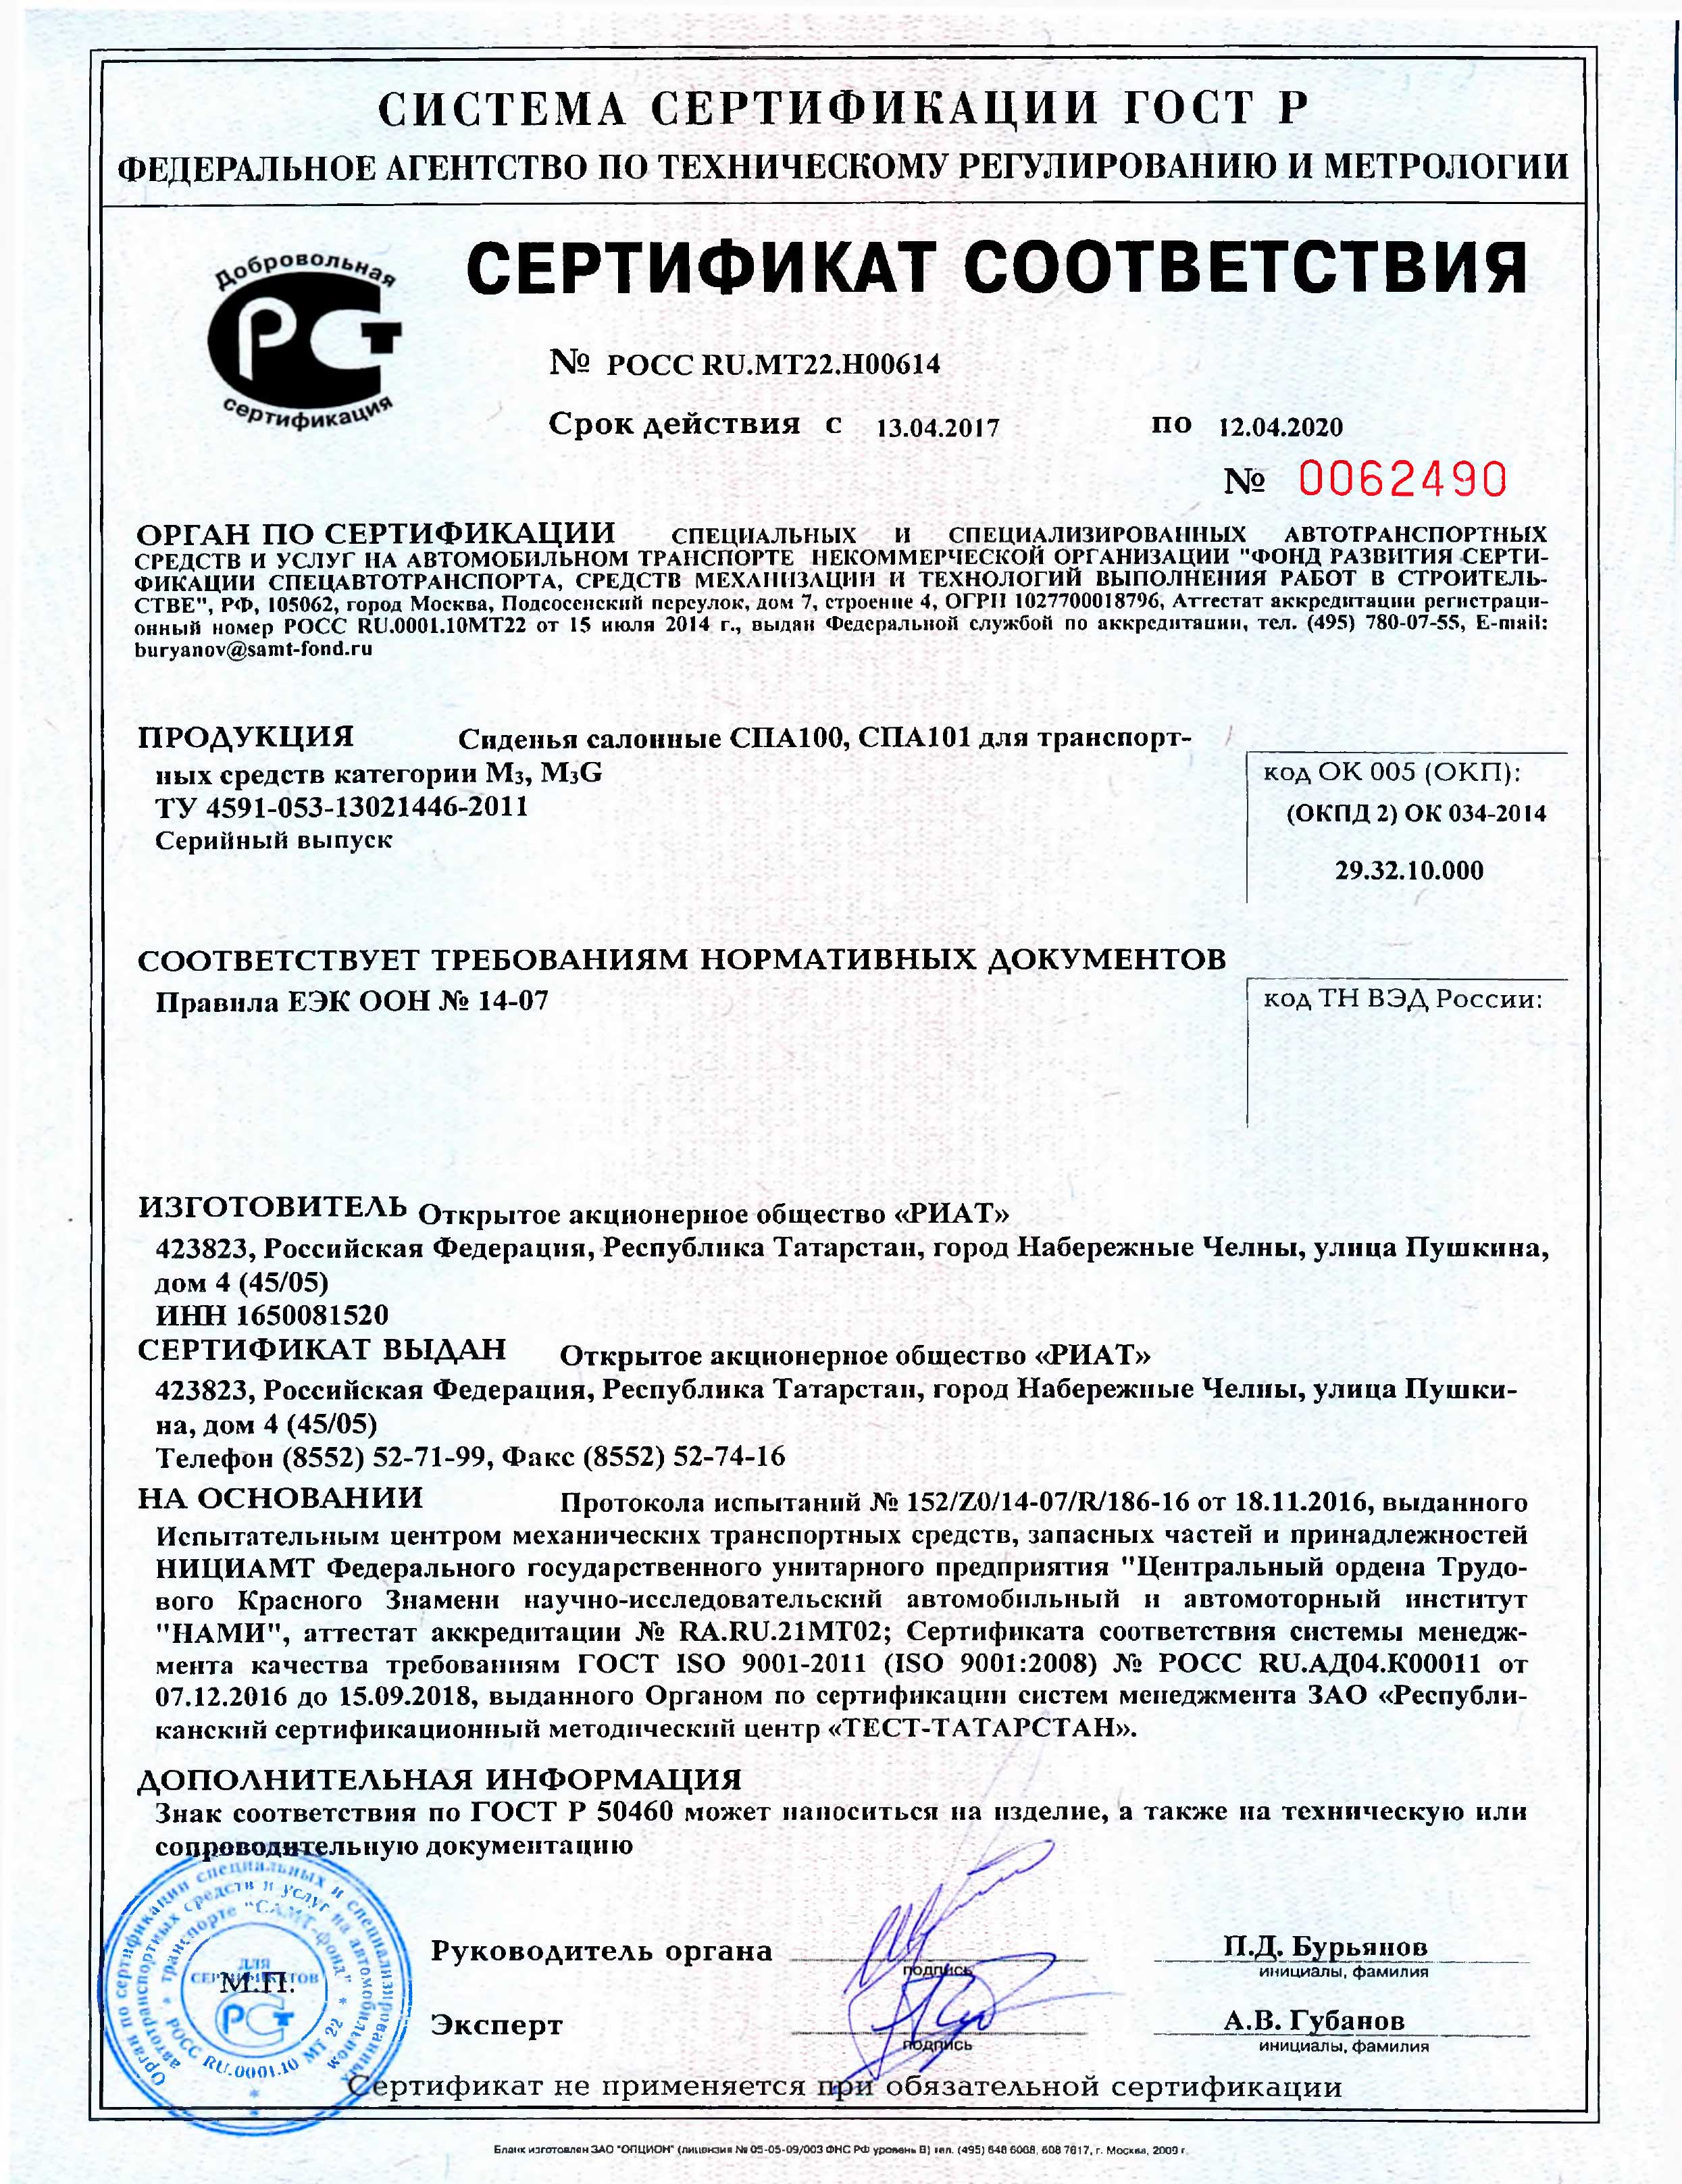 Сертификат сиденья РИАТ POCC-RU.MT22.H00614